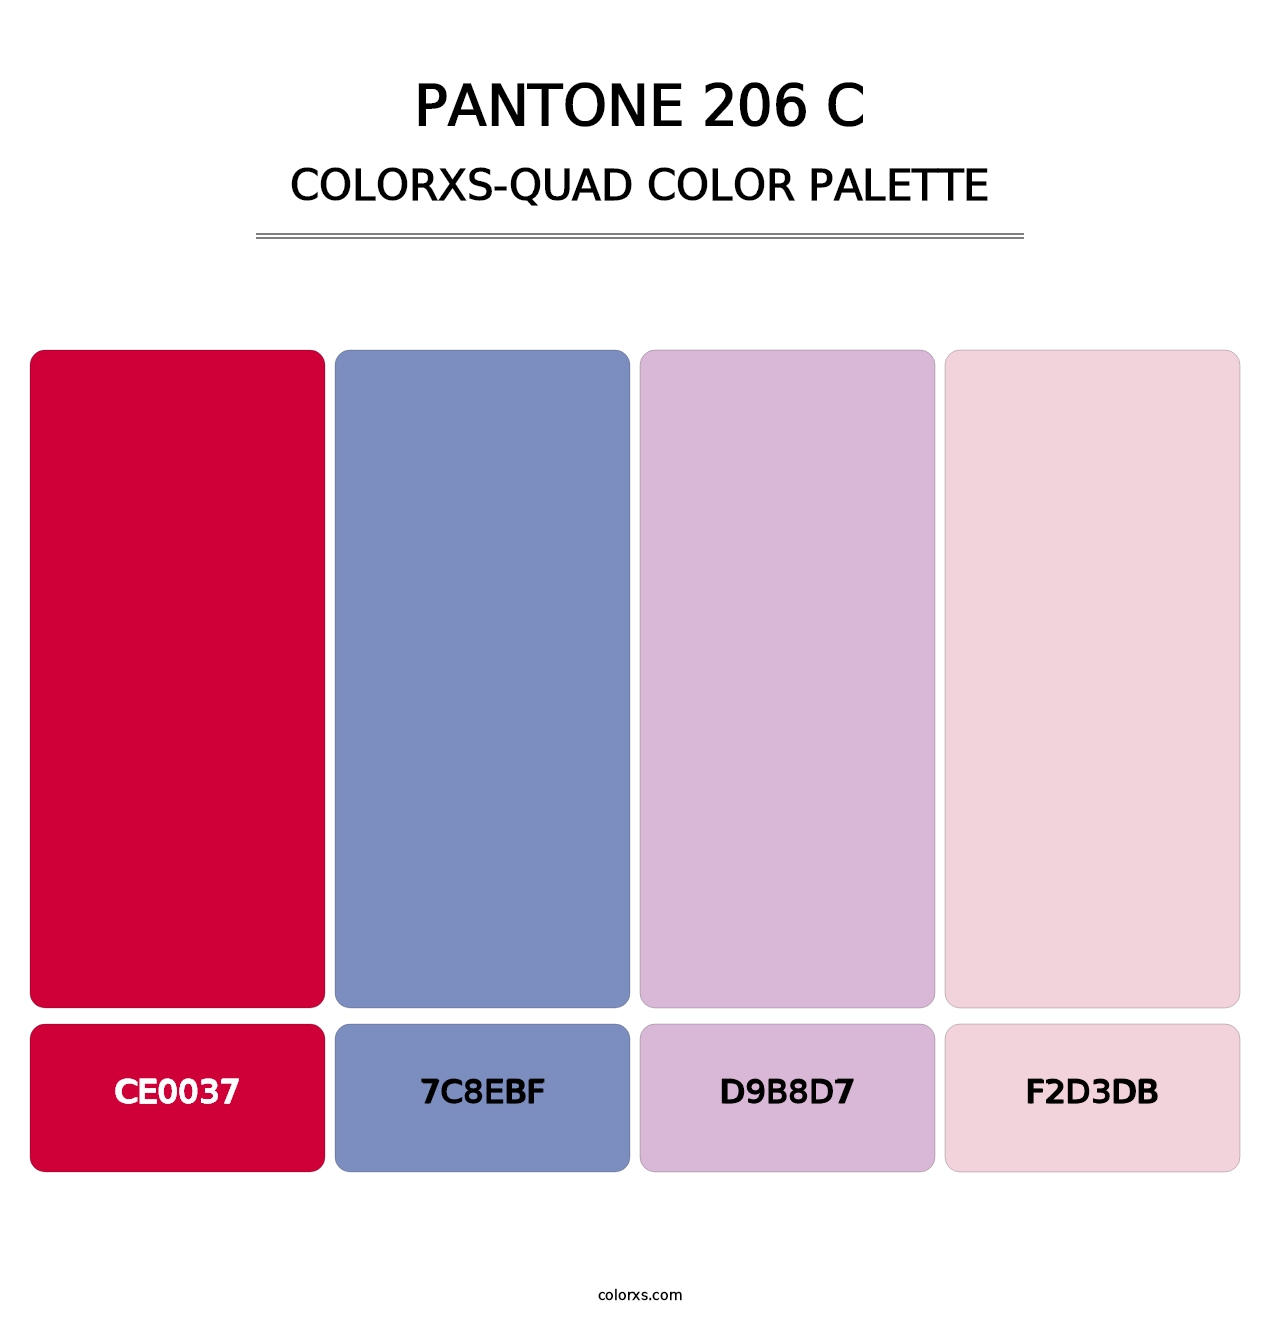 PANTONE 206 C - Colorxs Quad Palette